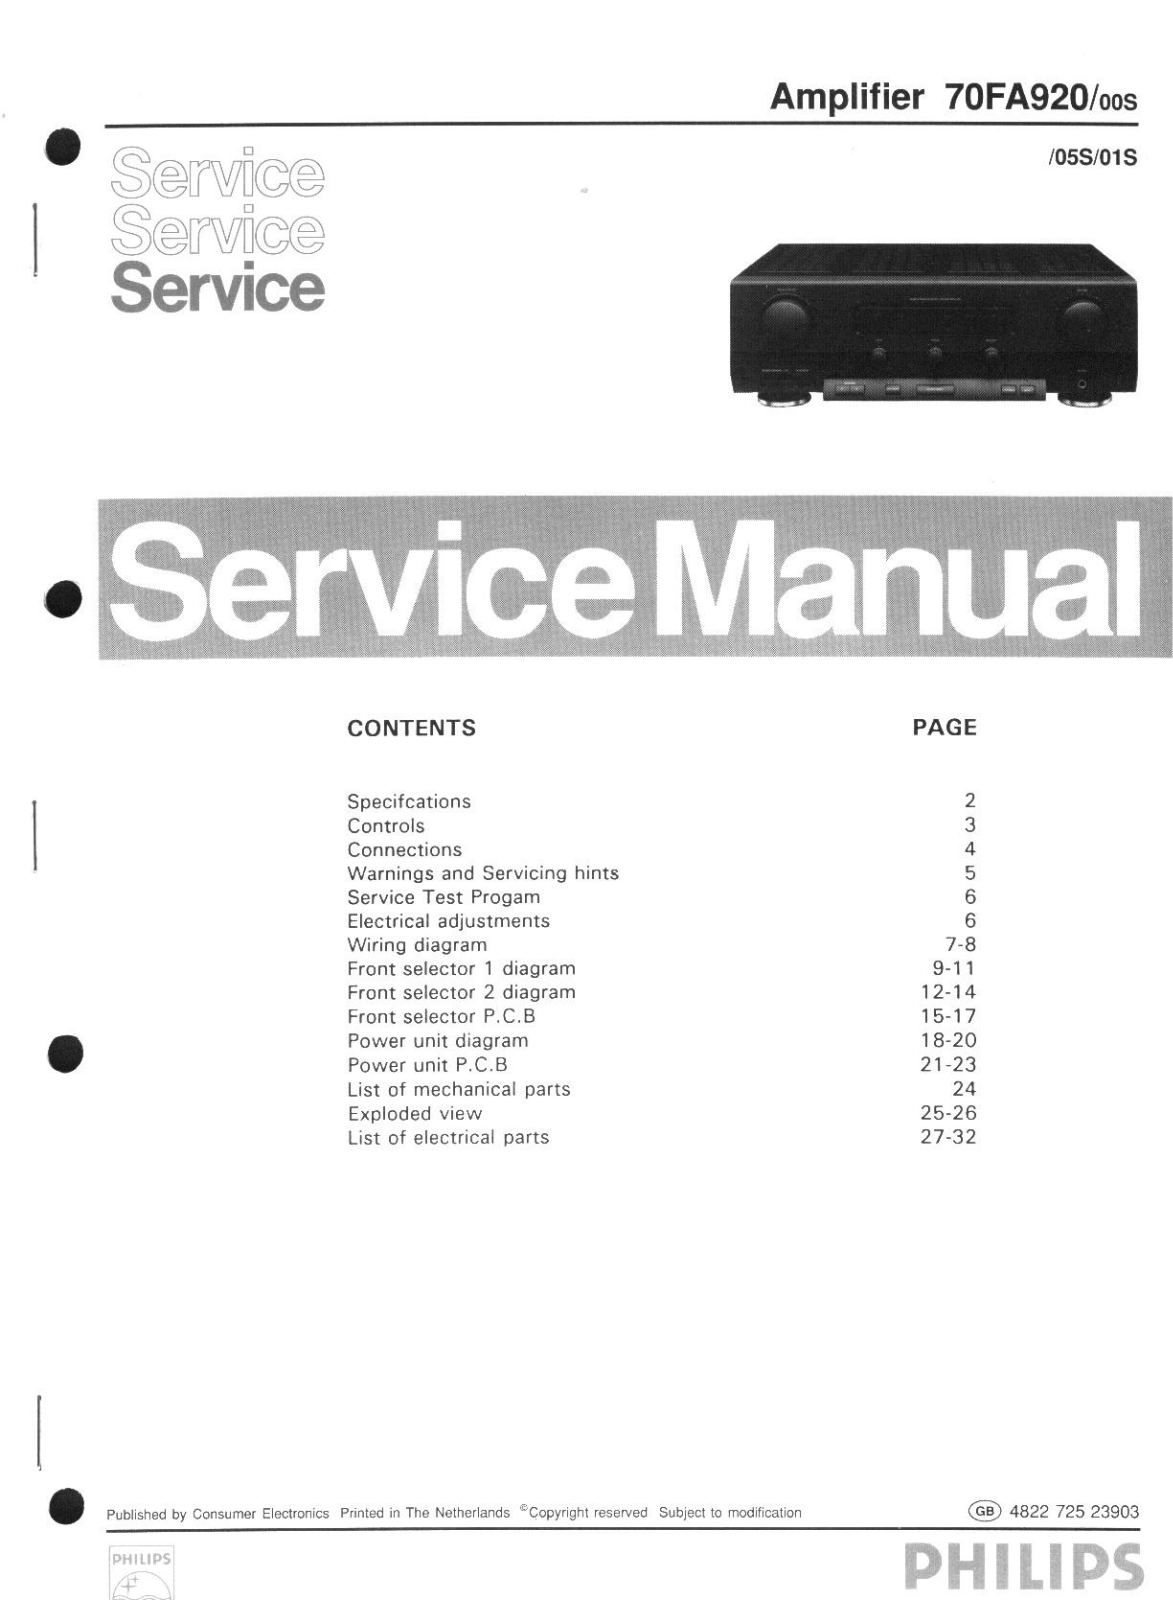 Philips 70FA920-00S, 70FA920-05S, 70FA920-01S Service Manual